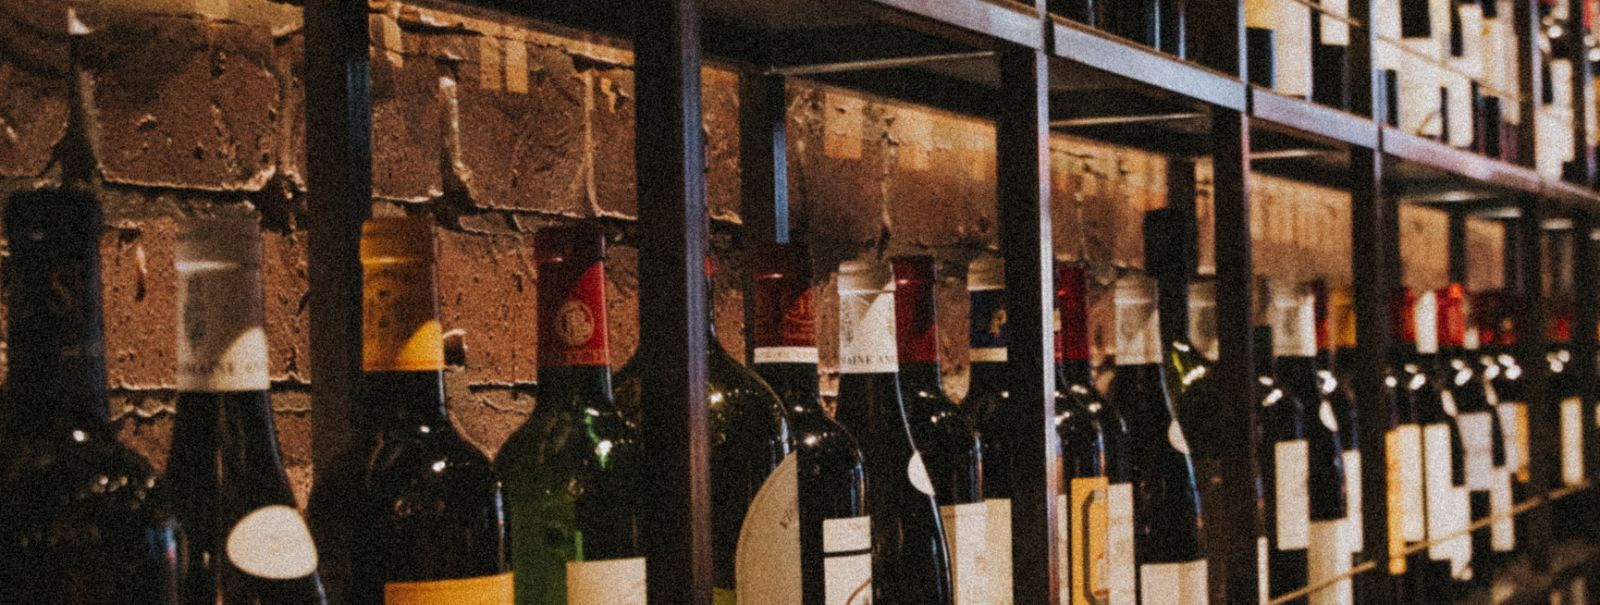 Vein on palju enamat kui lihtsalt jook – see on lugu, mis räägib maitsetest, aroomidest ja kultuurist. Ferro kohvik-restoranis kutsutakse sind avastama veini ma